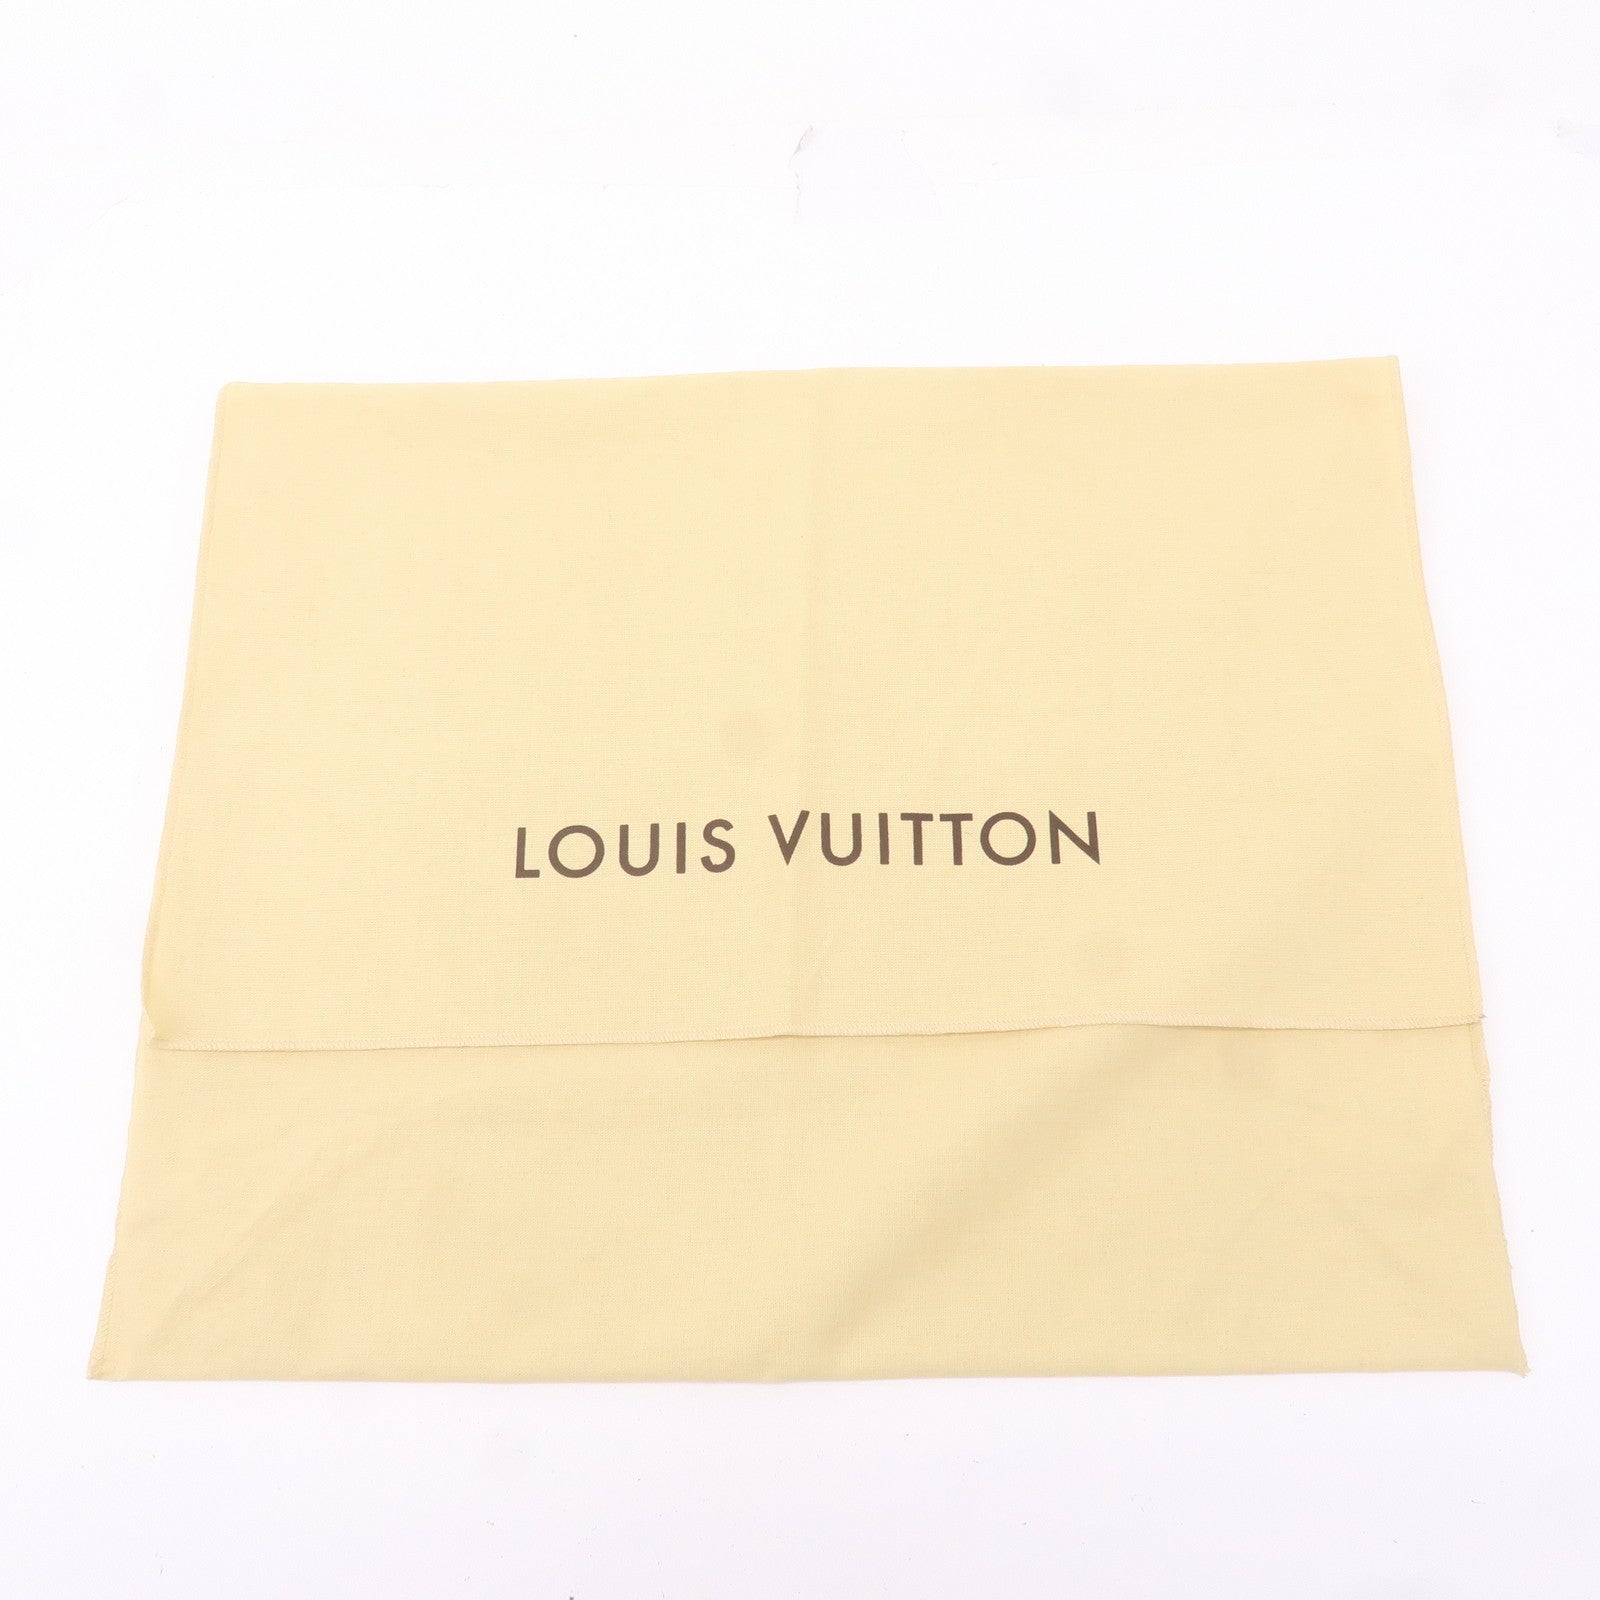 Louis-Vuitton-Set-of-10-Dust-Bag-Storage-Bag-Flap-Style-Beige